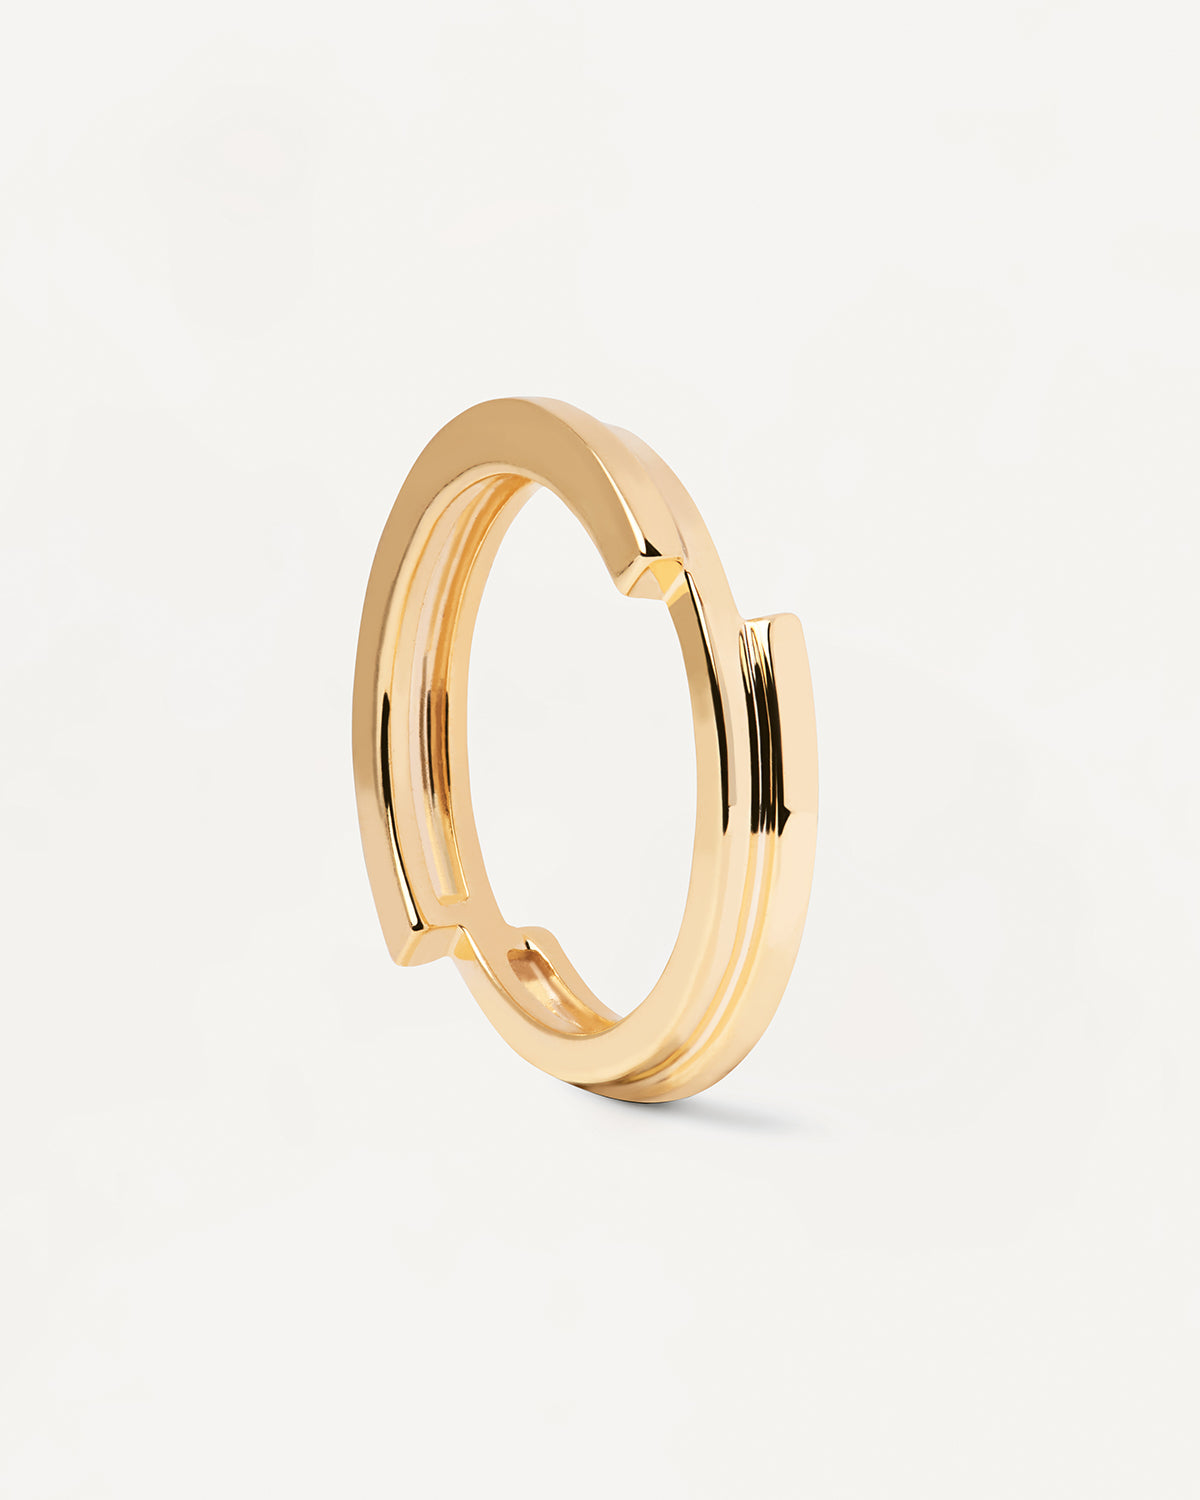 Genesis Ring. Vergoldeter Silberring mit asymmetrischem Design. Erhalten Sie die neuesten Produkte von PDPAOLA. Geben Sie Ihre Bestellung sicher auf und erhalten Sie diesen Bestseller.